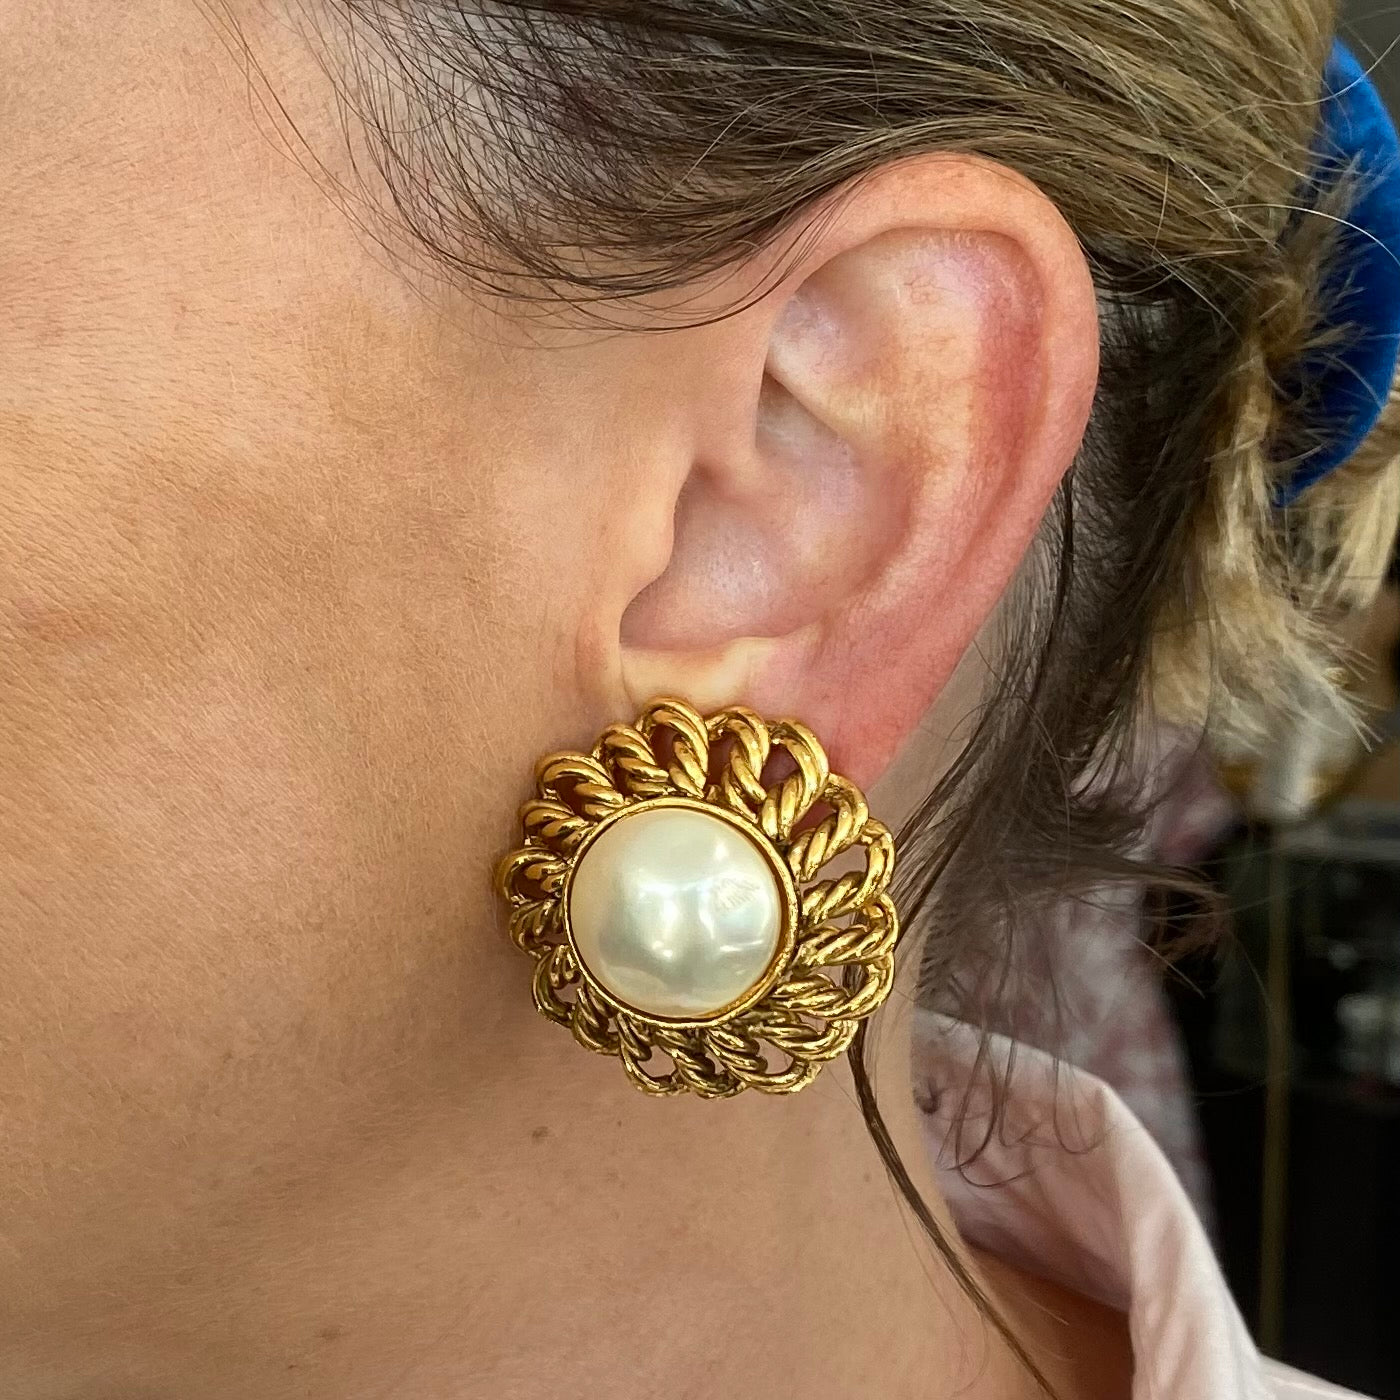 My Favorite Vintage Chanel Earrings - A Vintage Splendor Shares Her Fave